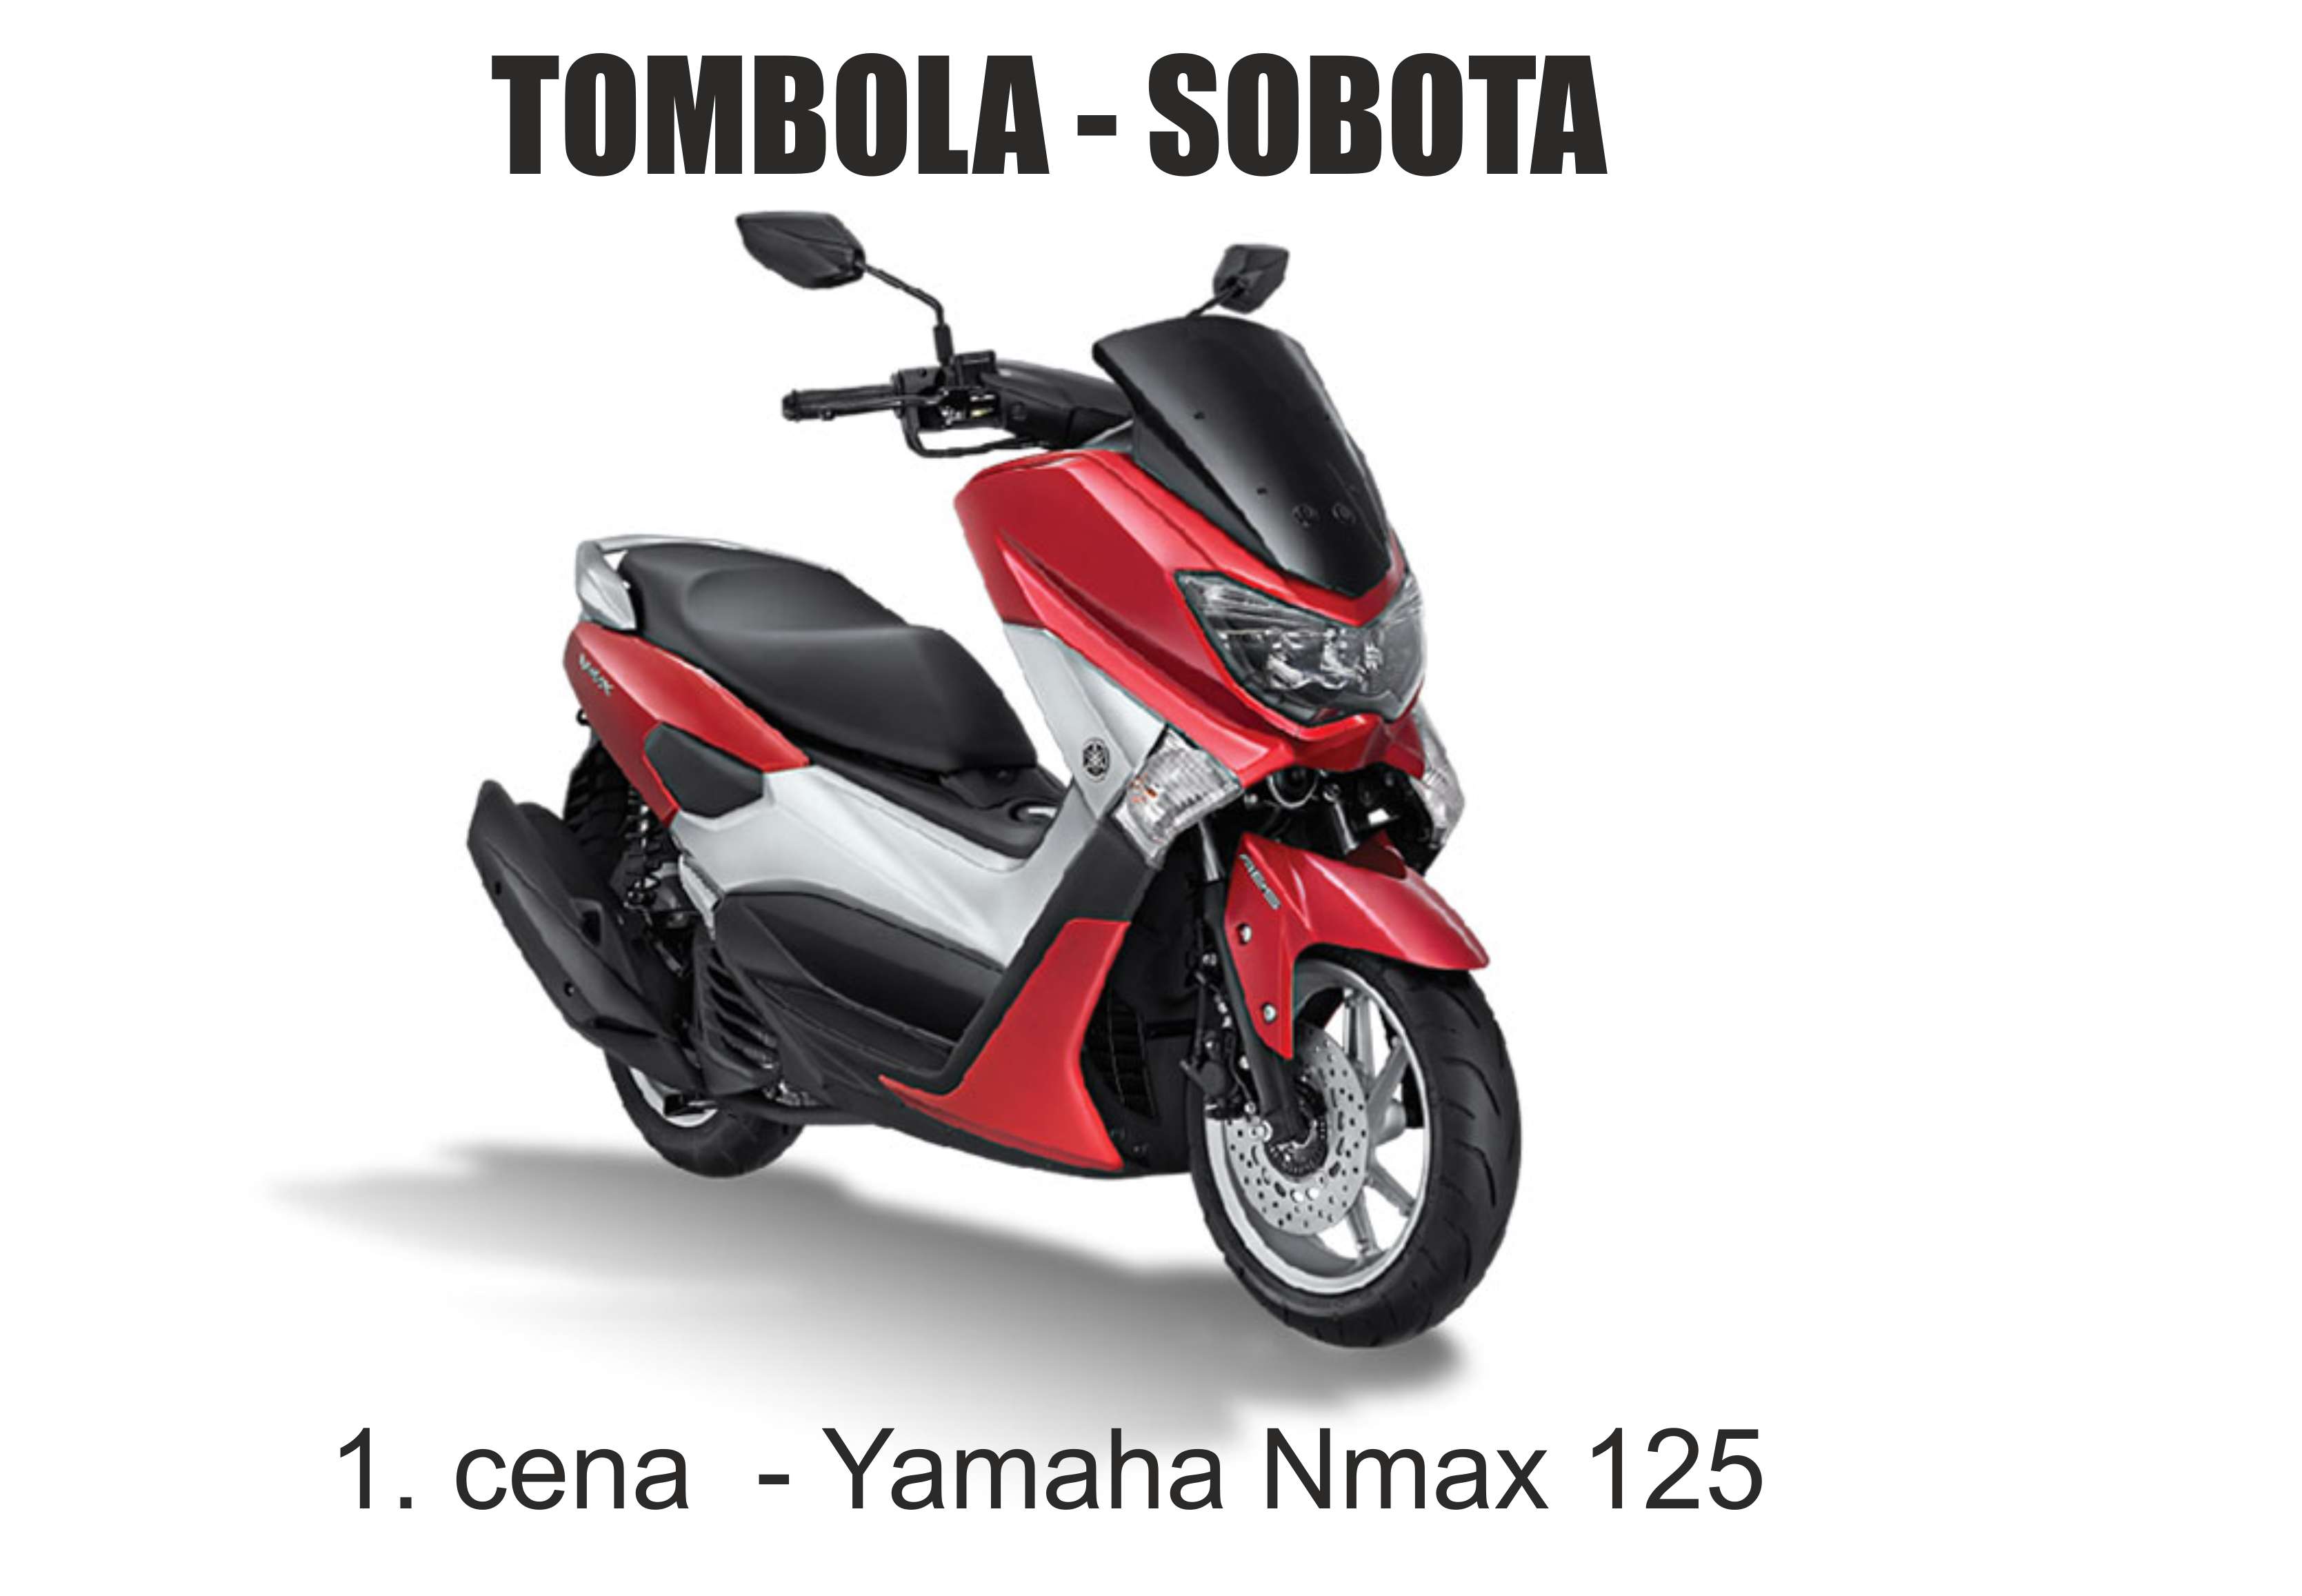 Vyhrať môžete aj skúter Yamaha Nmax 125